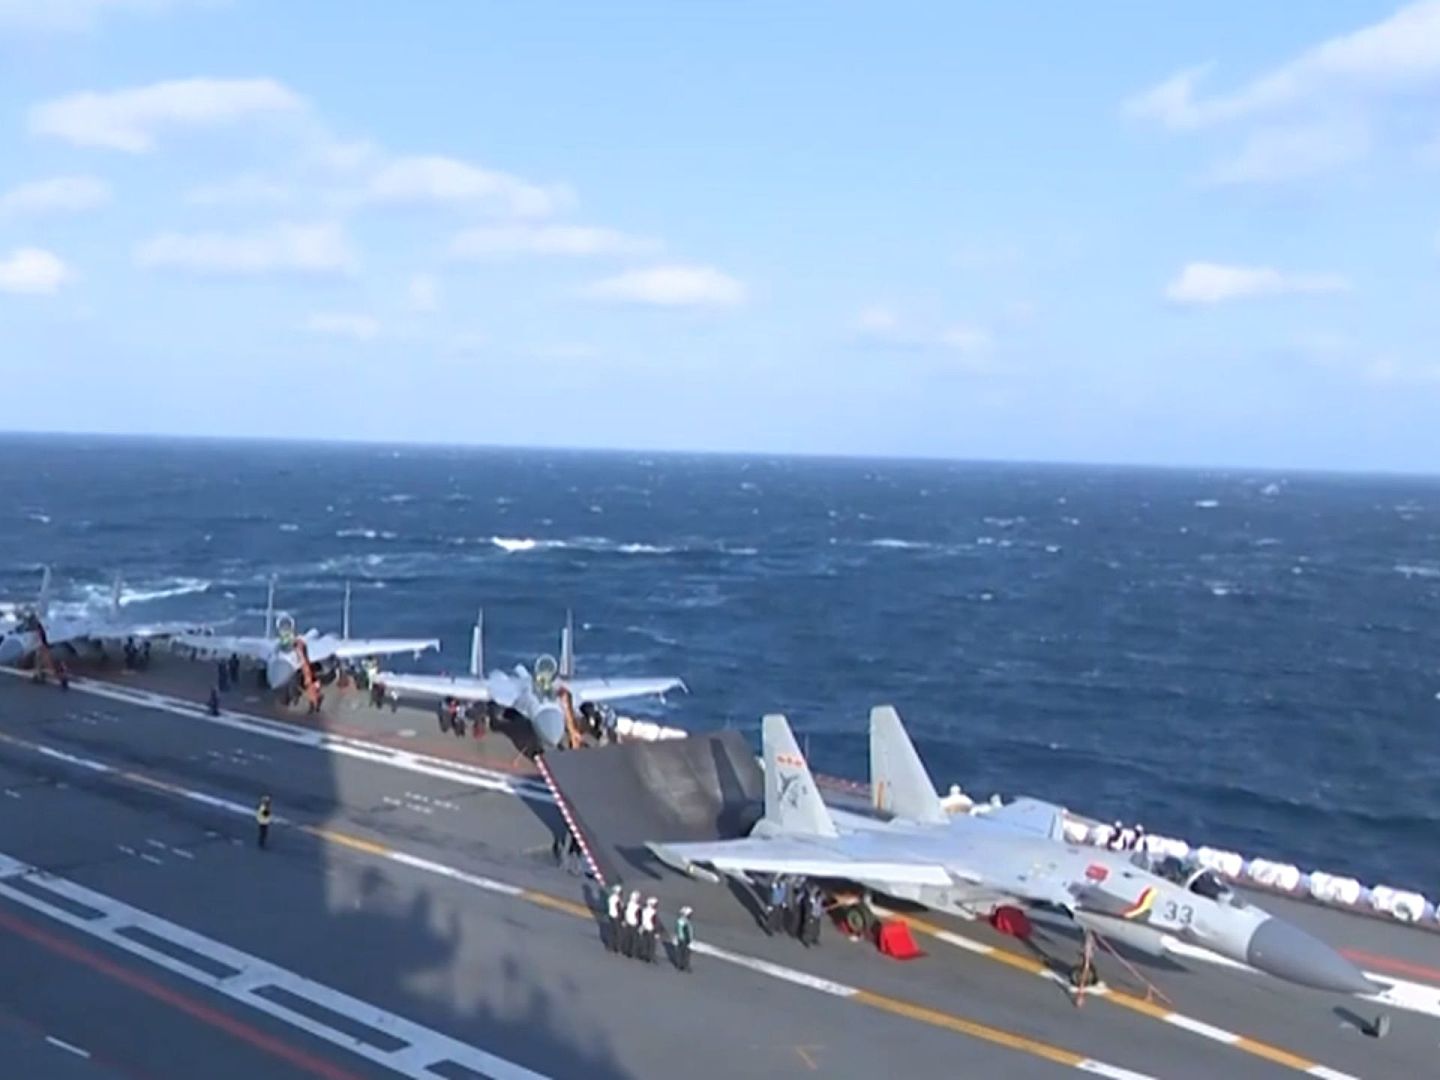 视频中，可以看到机号为33的歼-15舰载机正在准备起飞。（央视军事视频截图）